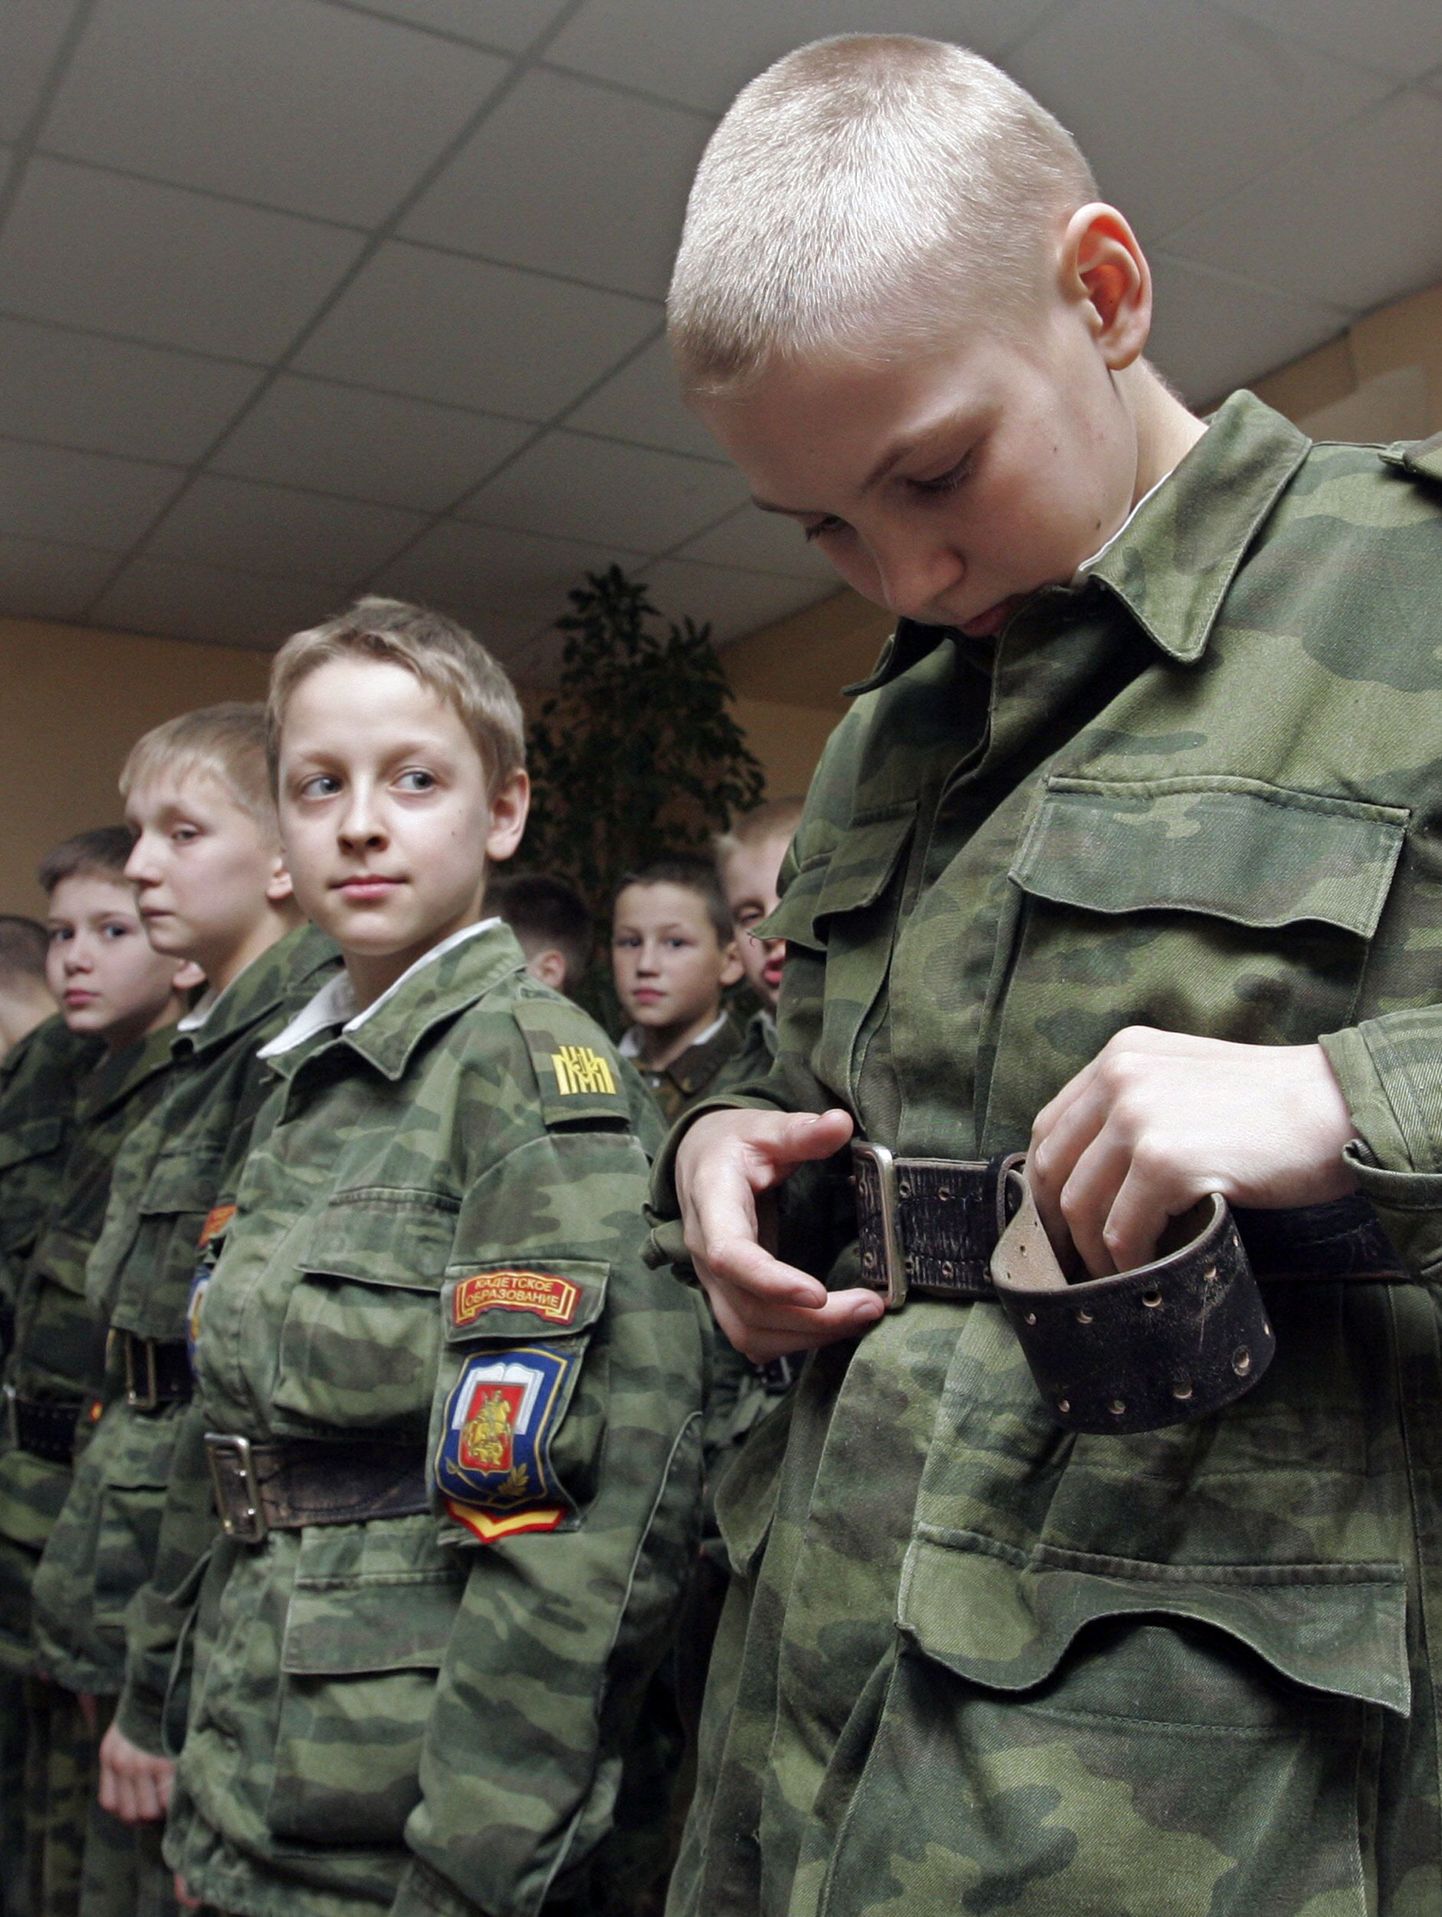 Venemaal on juba üle 100 kadettide kooli, kus õpivad noorukid. Nüüd lisandus internaatkool ka tüdrukutele.